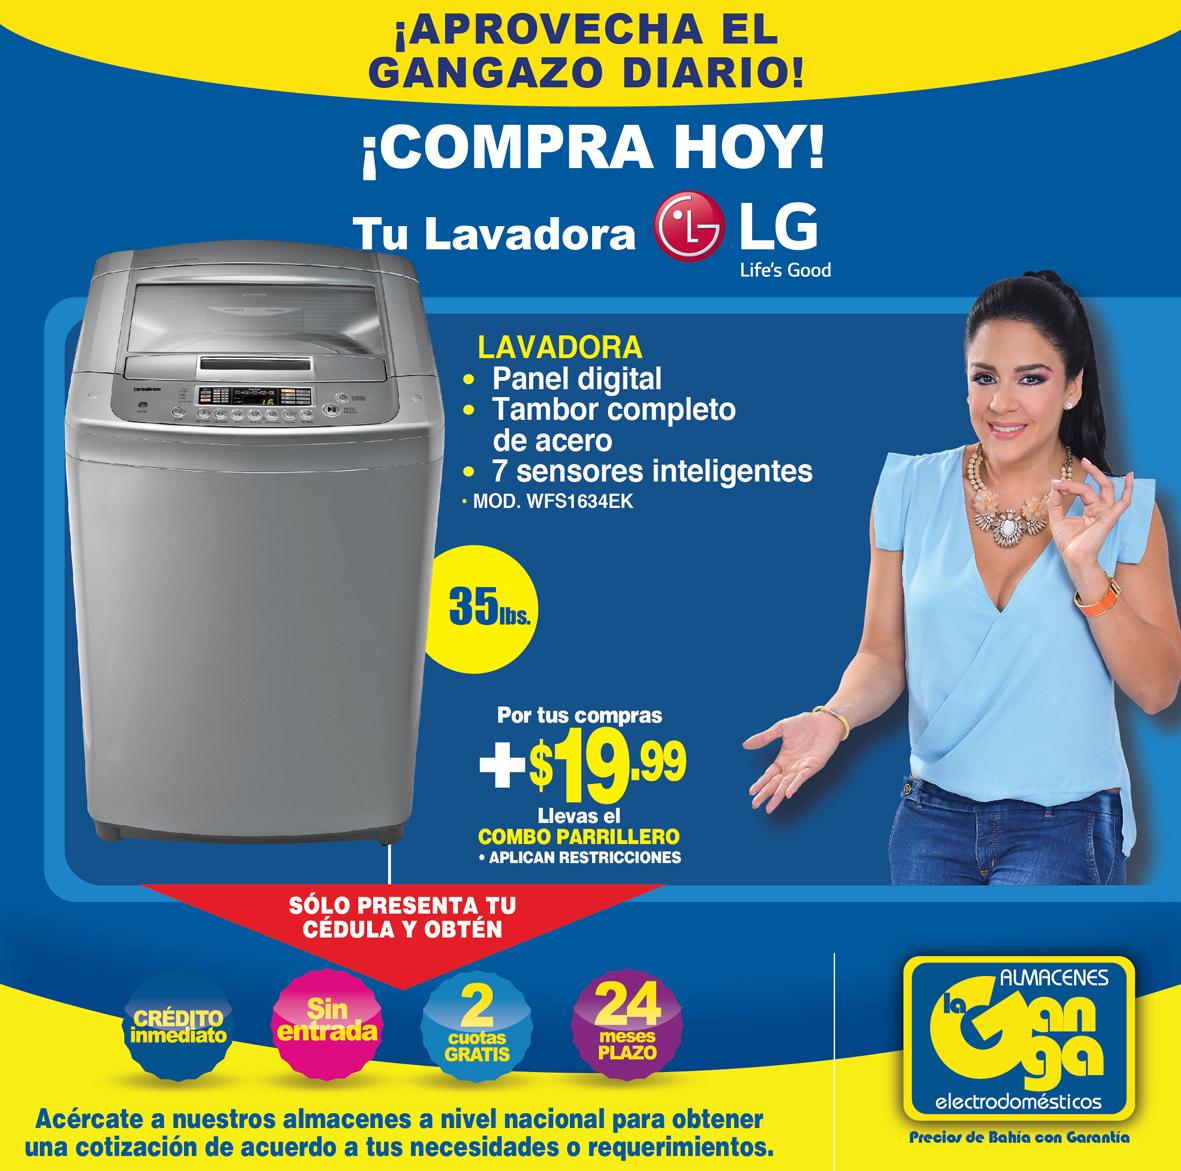 Almacenes La Ganga on Twitter: "¡Llévate tu lavadora #LG en cómodas cuotitas! Recuerda que tienes 24 plazo y 2 cuotas gratis. #GangazoDiario / Twitter